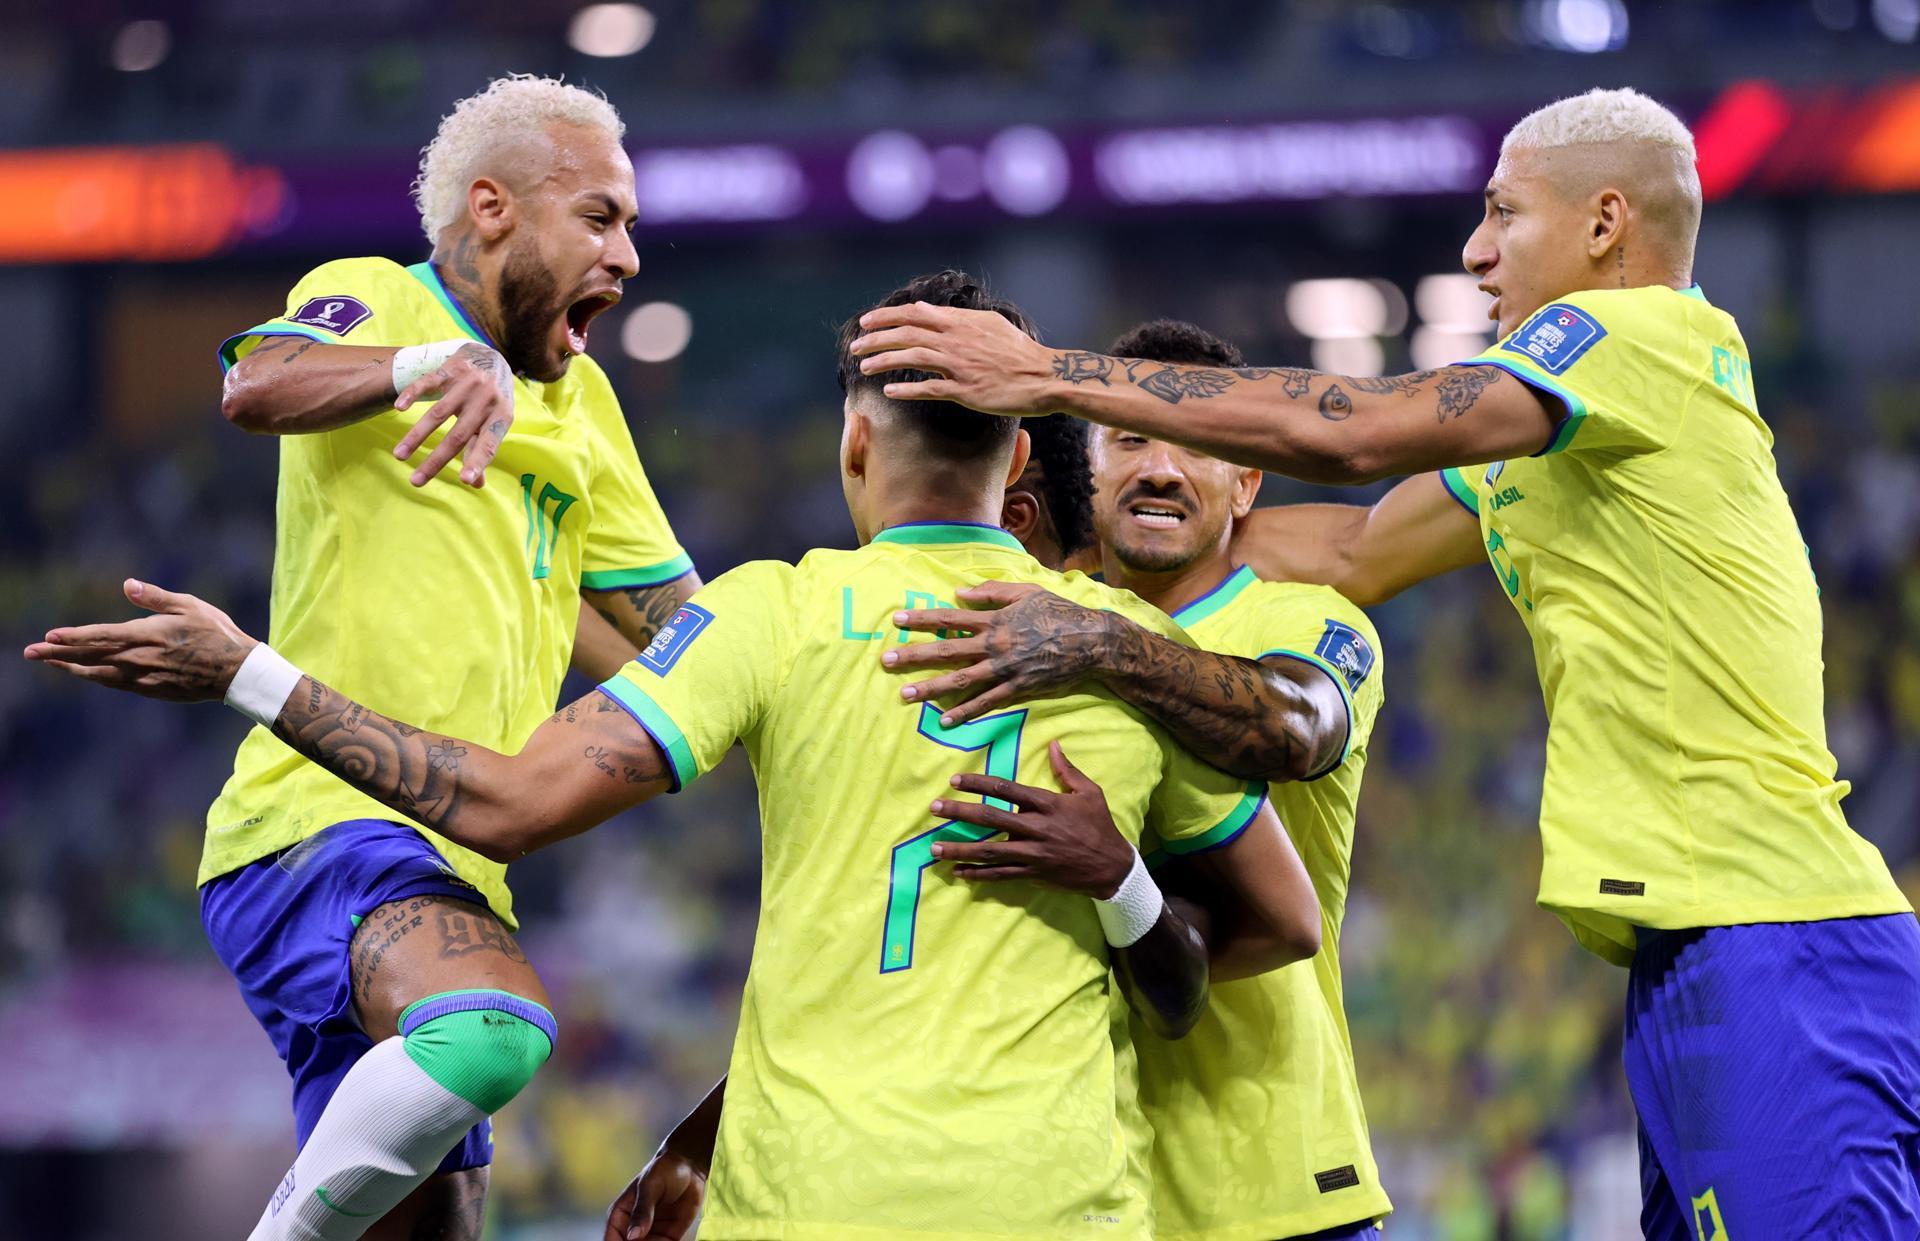 Mundial-2022: Brasil nos quartos após derrotar a Coreia do Sul